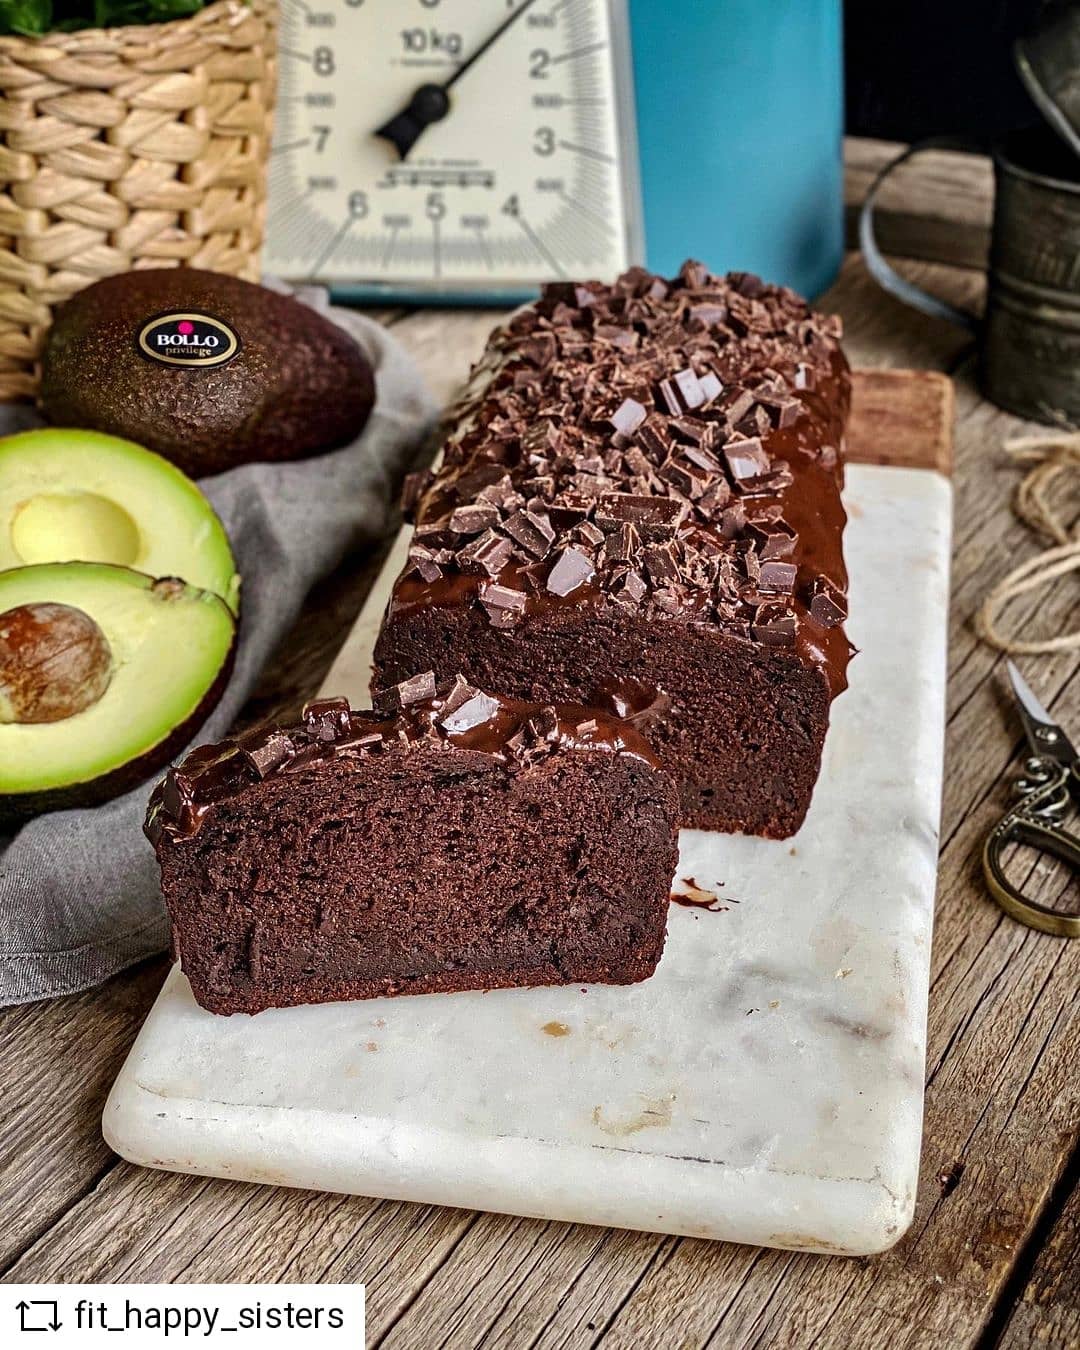 Vegan chocolate and avocado cake